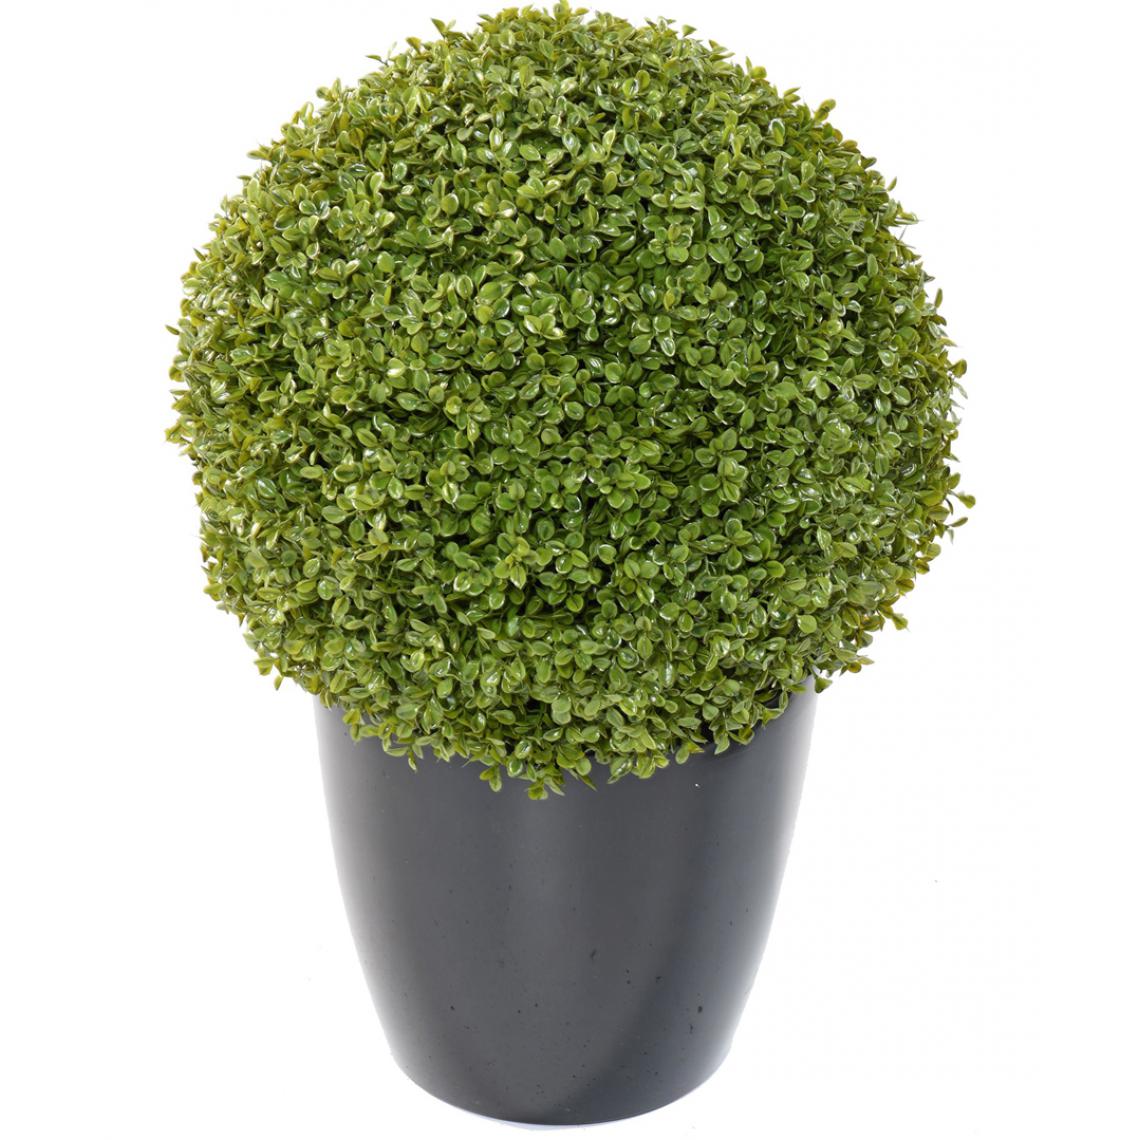 Pegane - Plante artificielle haute gamme Spécial extérieur / Buis boule artificiel - Dim : H.44 x D.44 cm - Plantes et fleurs artificielles